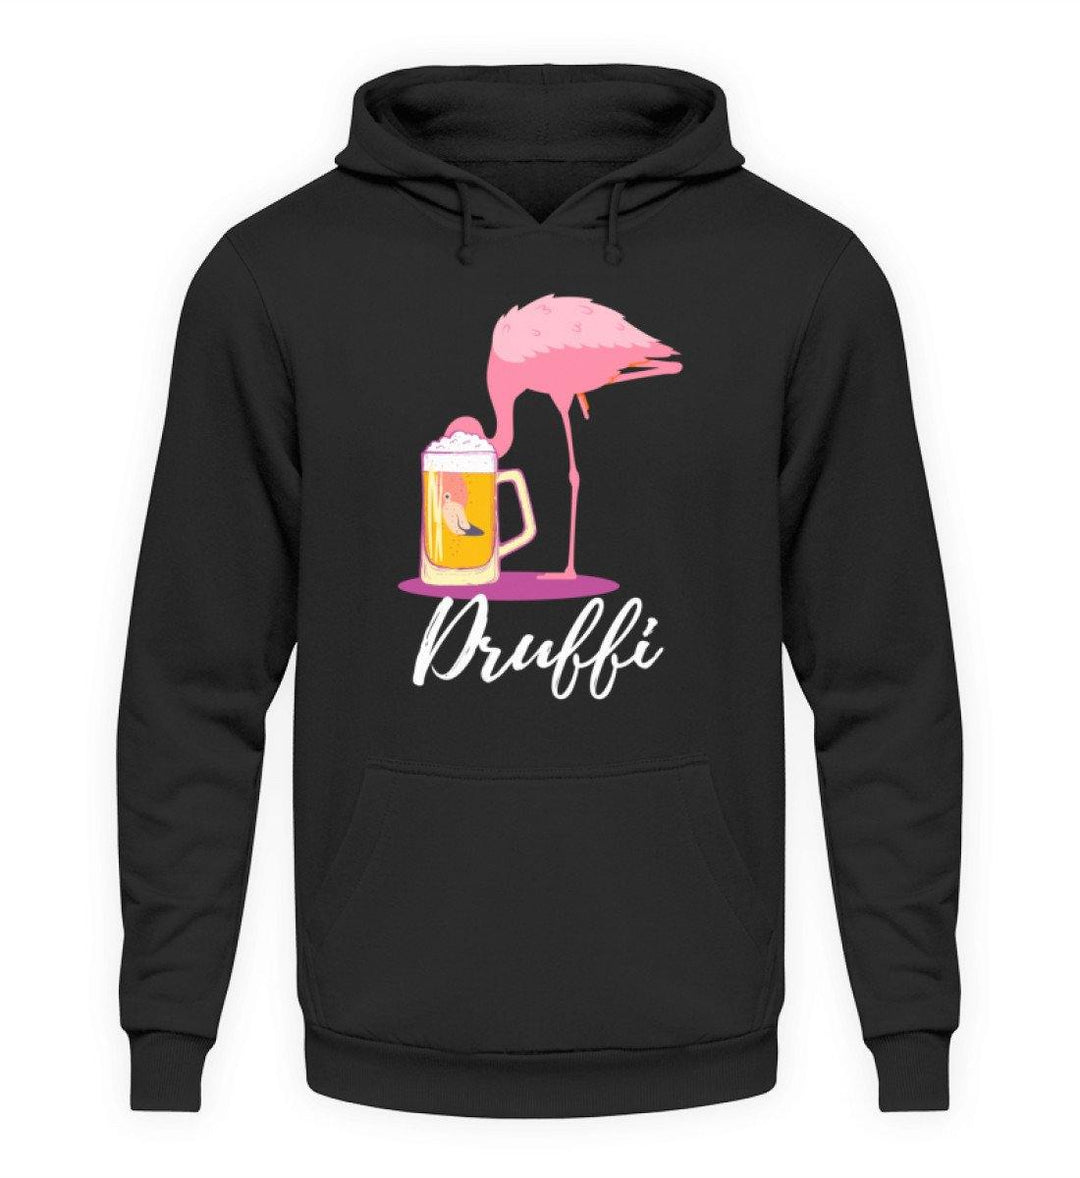 Flamingo Druffi - Words on Shirt  - Unisex Kapuzenpullover Hoodie - Words on Shirts Sag es mit dem Mittelfinger Shirts Hoodies Sweatshirt Taschen Gymsack Spruch Sprüche Statement